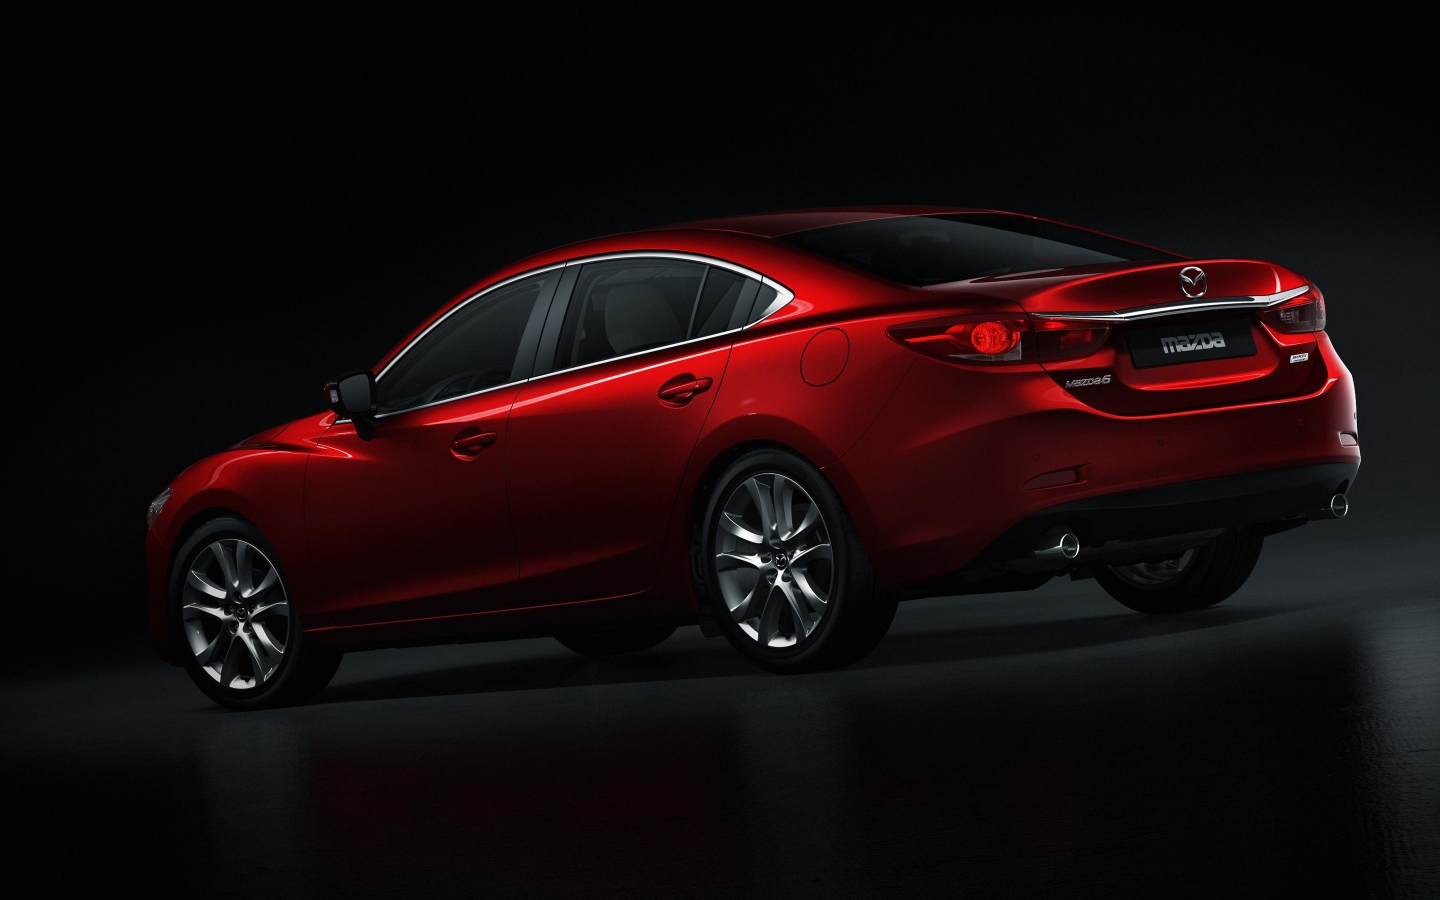 Mazda 6 2014 Rear Studio for 1440 x 900 widescreen resolution